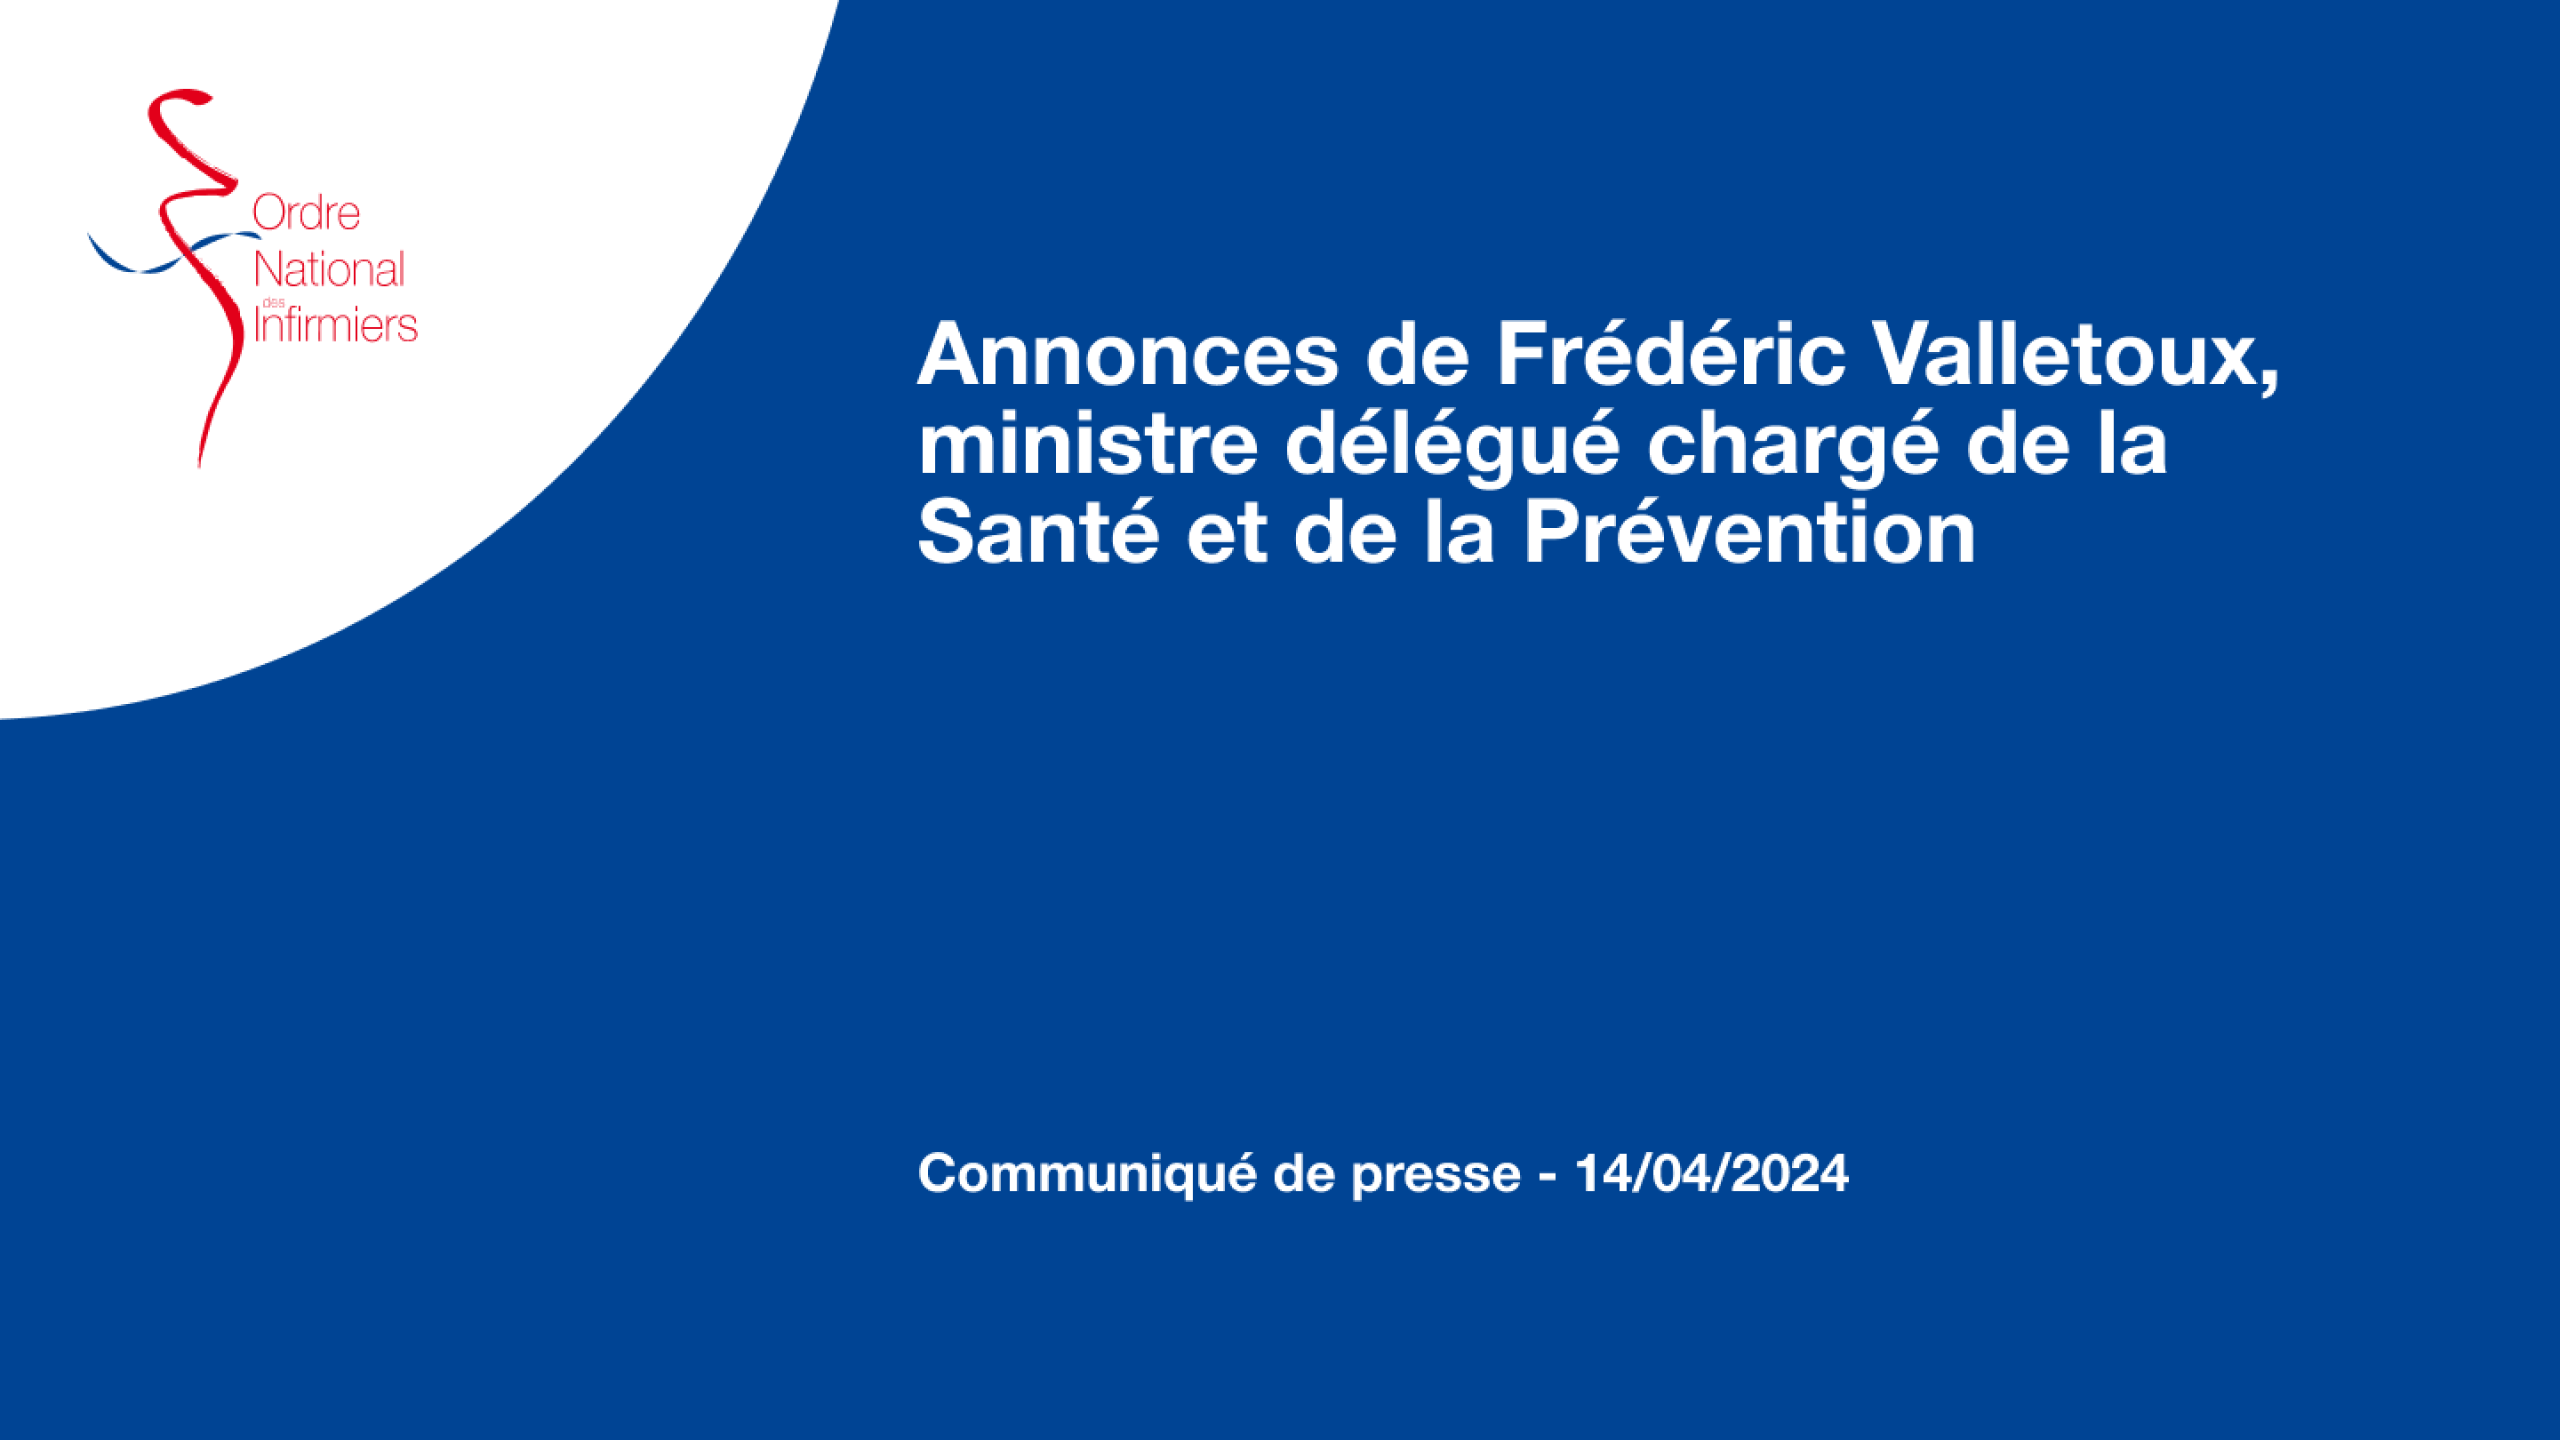 Annonces de Frédéric Valletoux, ministre délégué chargé de la Santé et de la Prévention